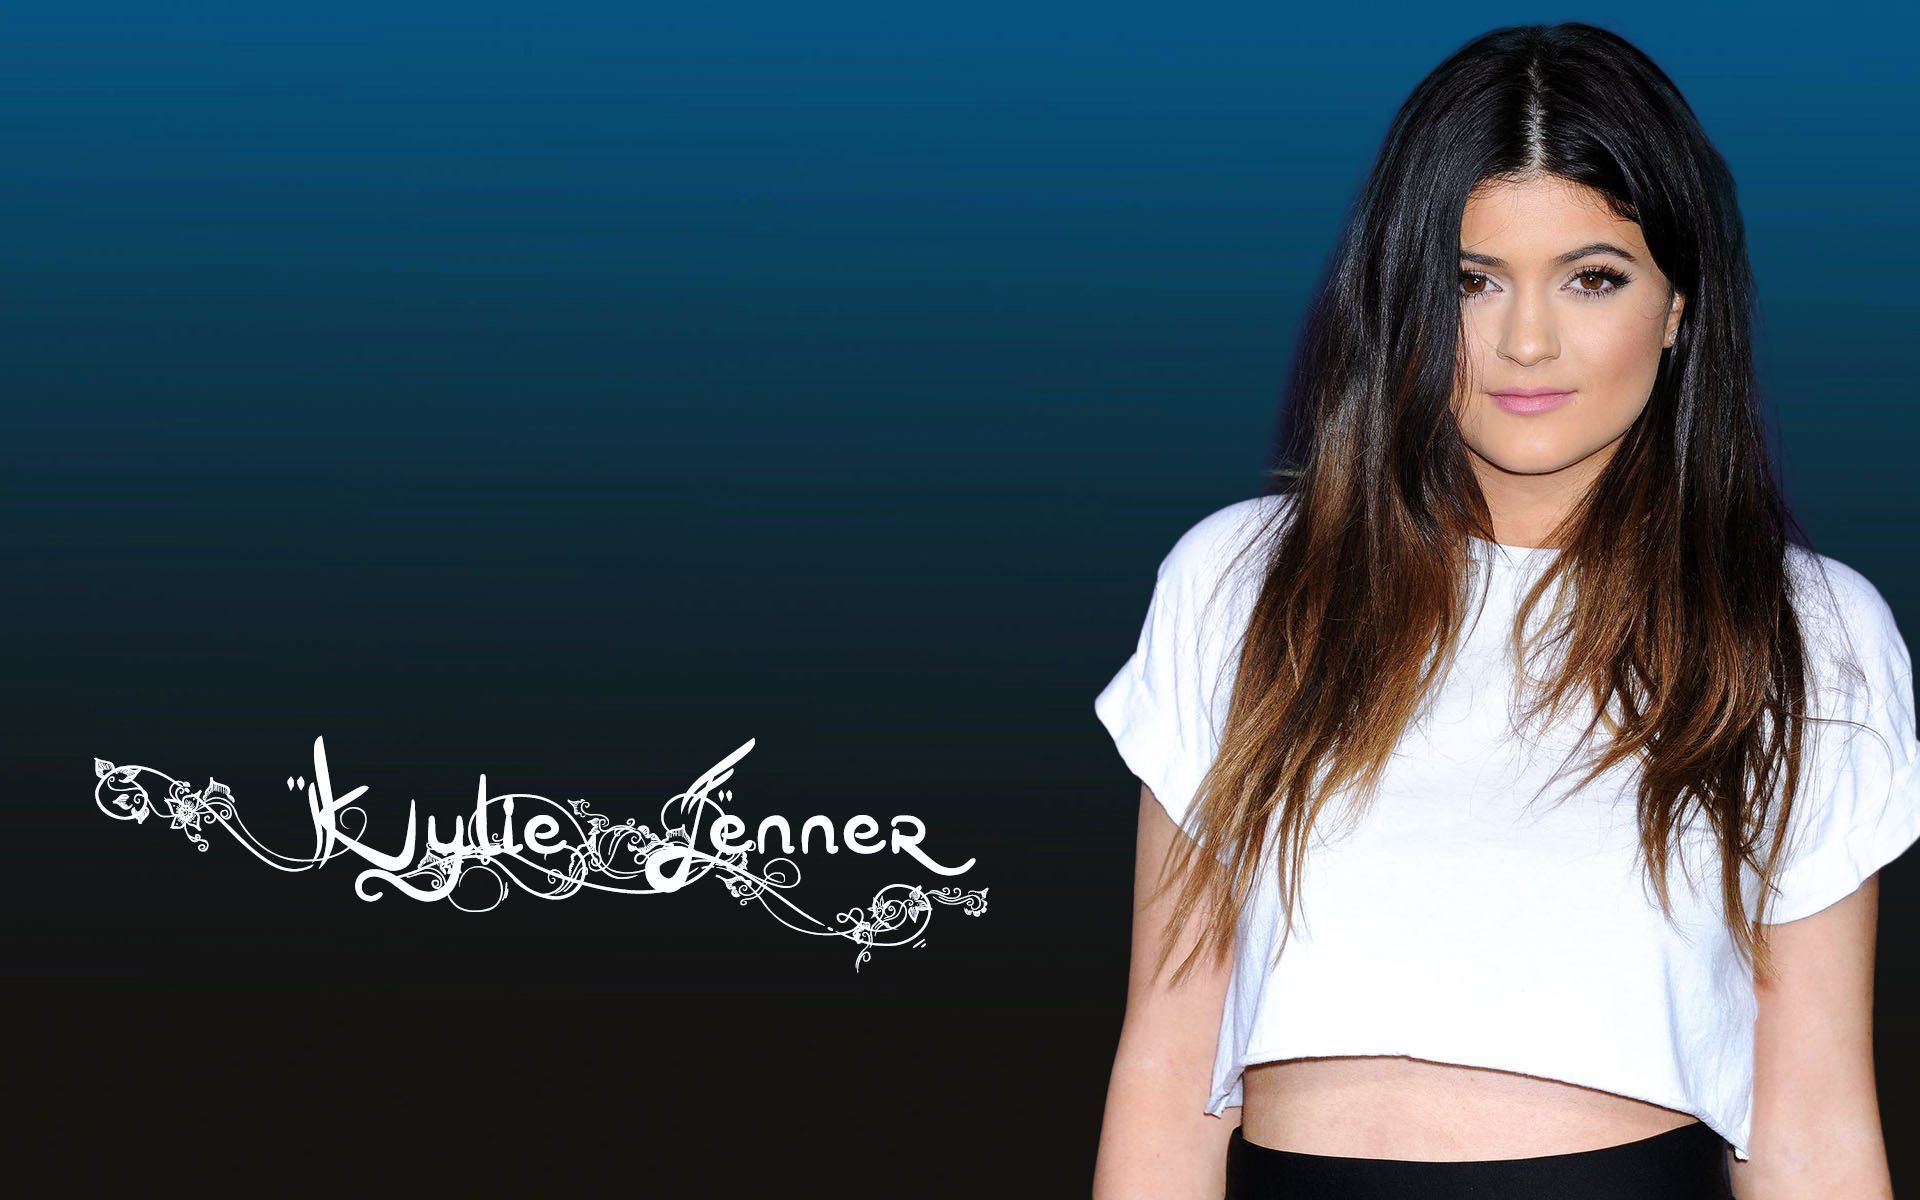 Kylie Jenner Computer Wallpaper